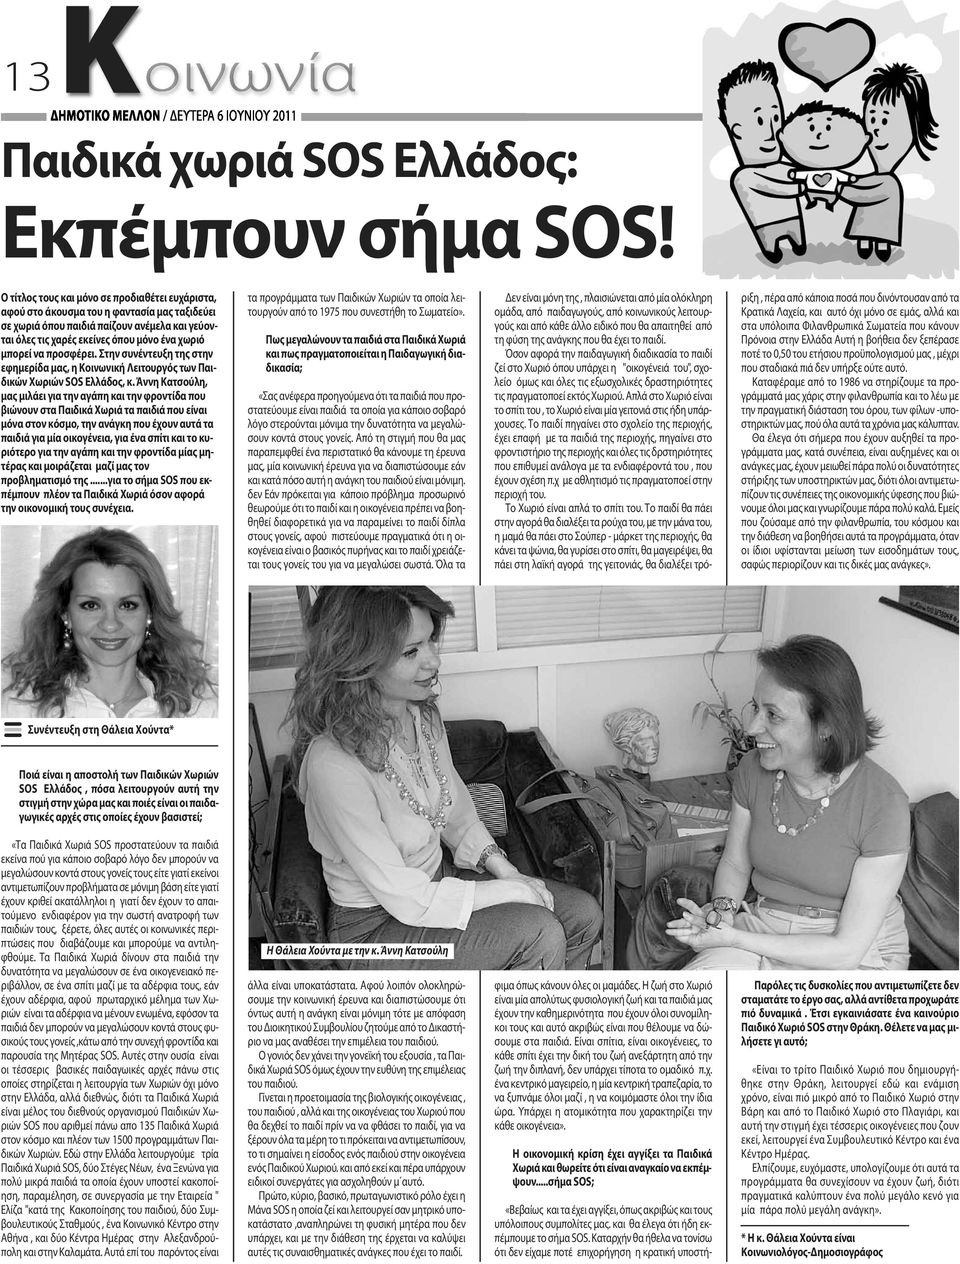 προσφέρει. Στην συνέντευξη της στην εφημερίδα μας, η Κοινωνική Λειτουργός των Παιδικών Χωριών SOS Eλλάδος, κ.